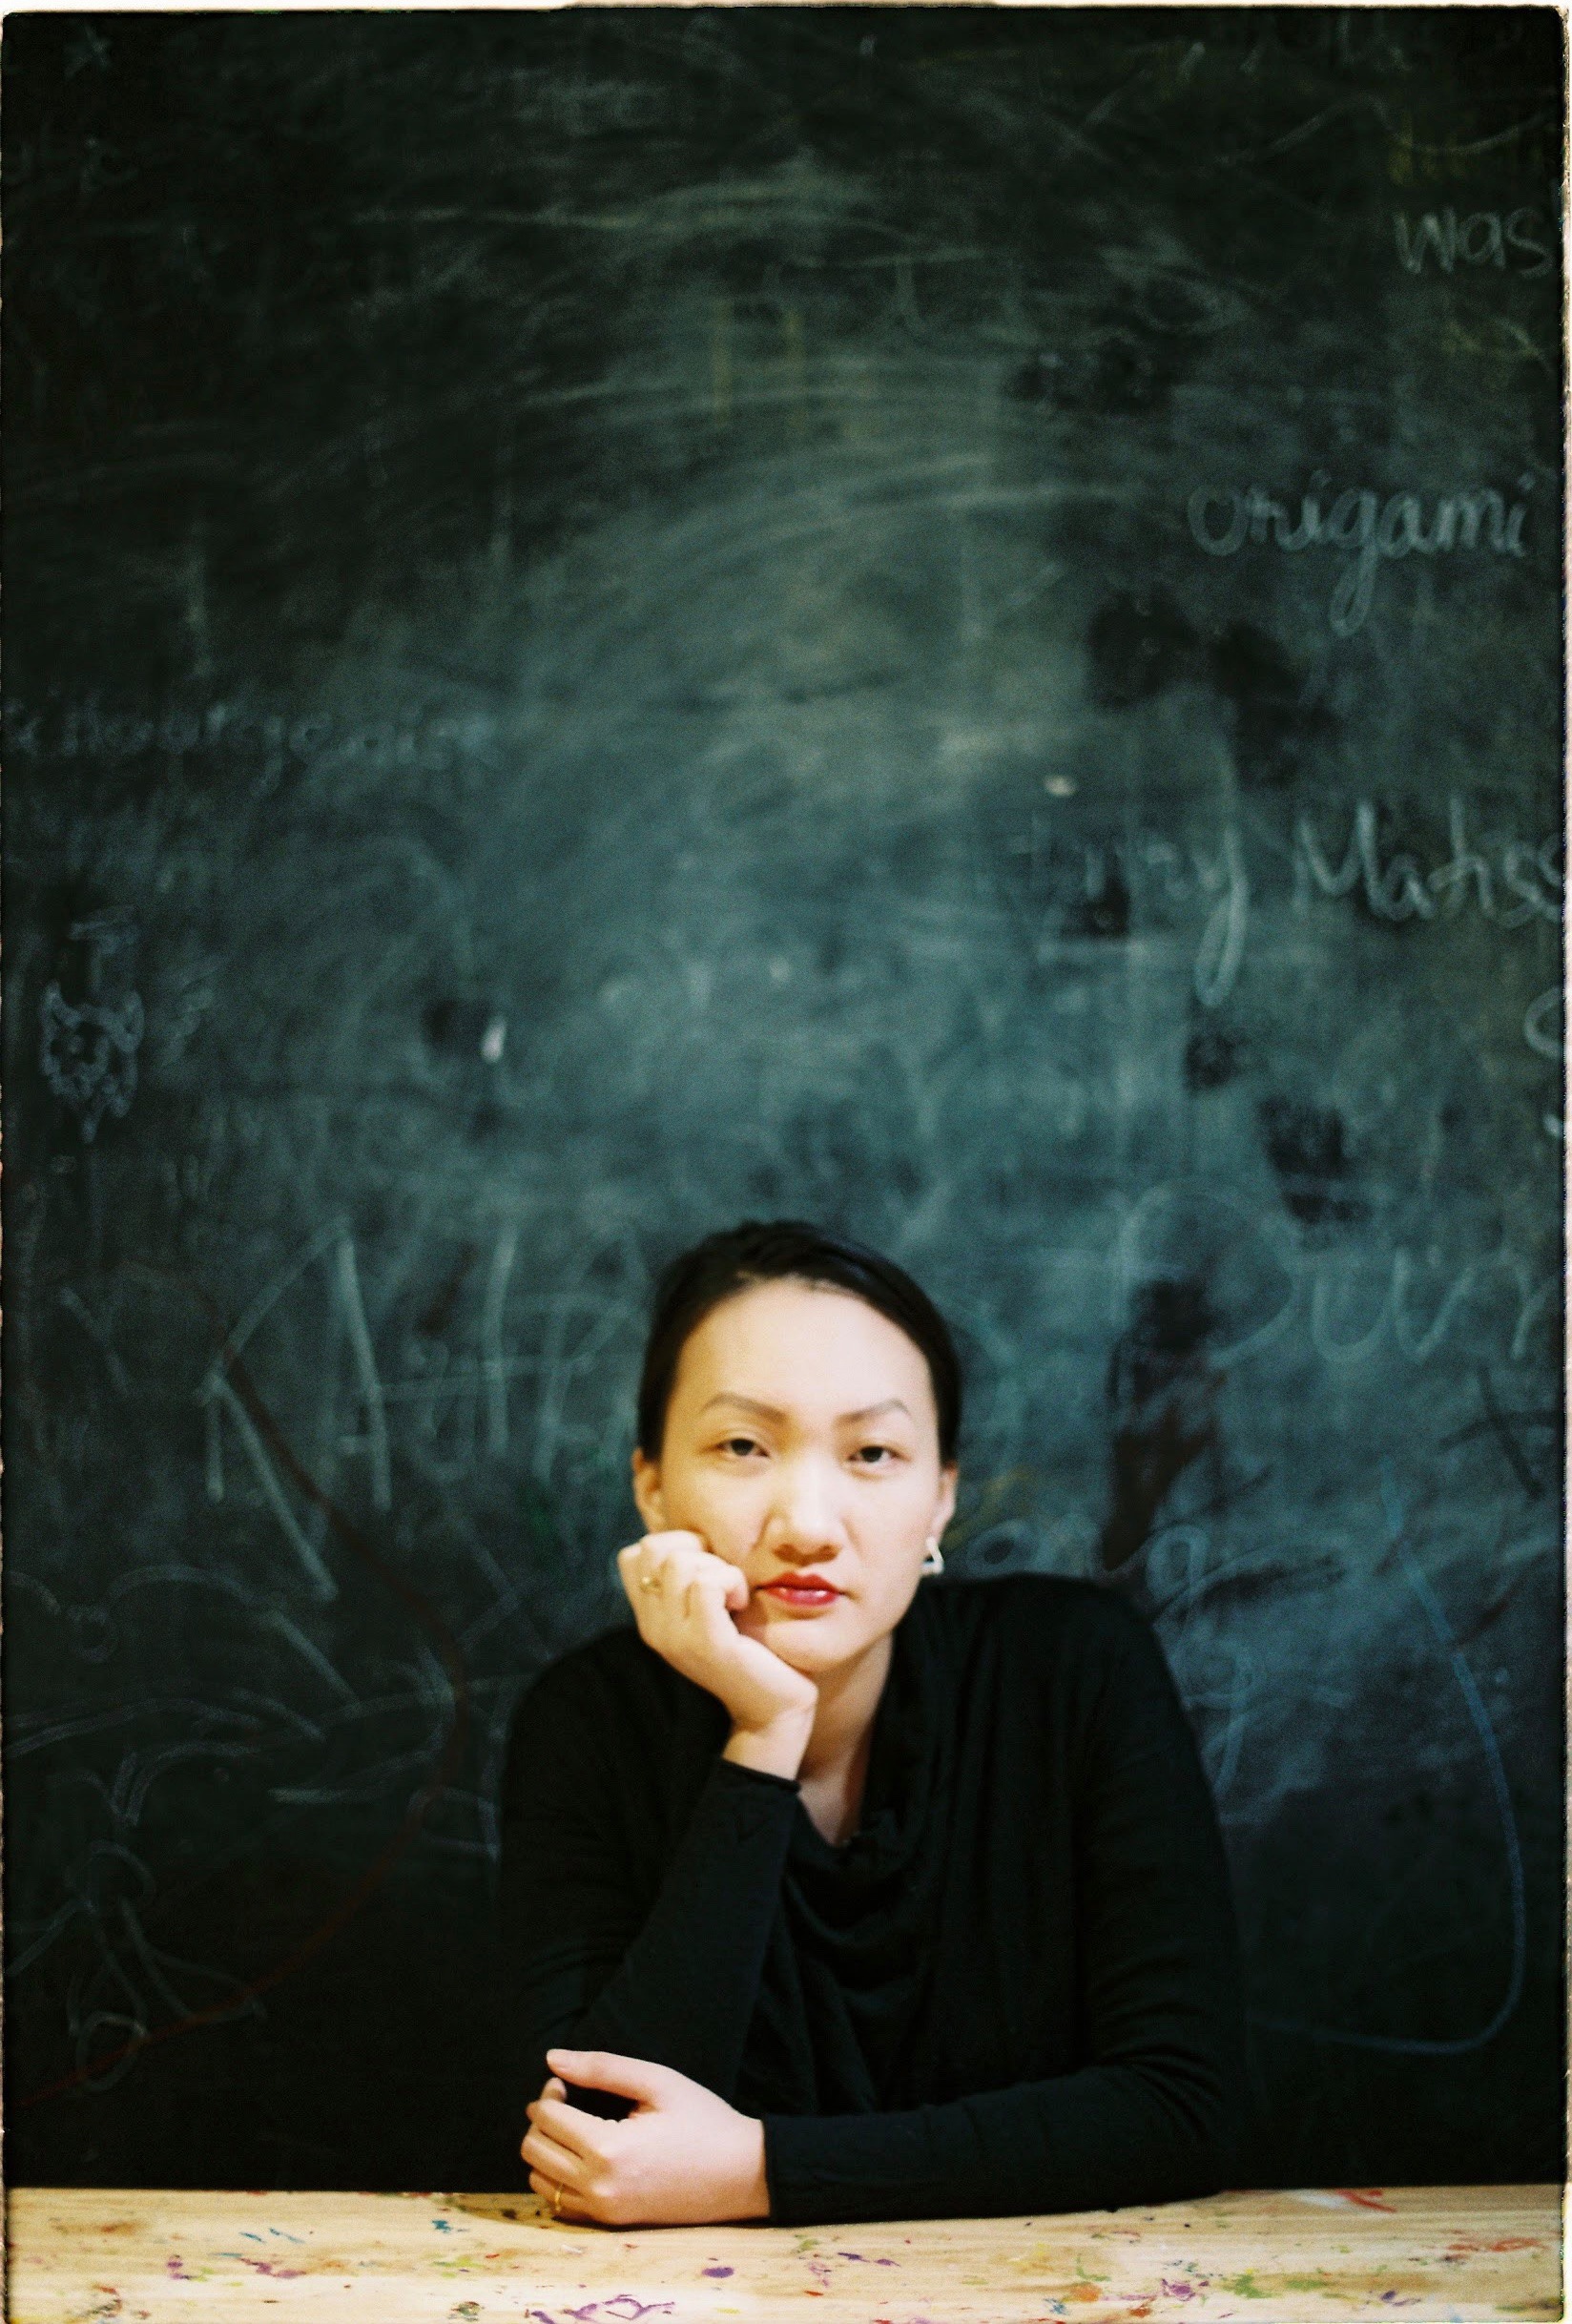 Nguyễn Thùy Trang, Co – Founder Tổ hợp giáo dục nghệ thuật Tí Toáy